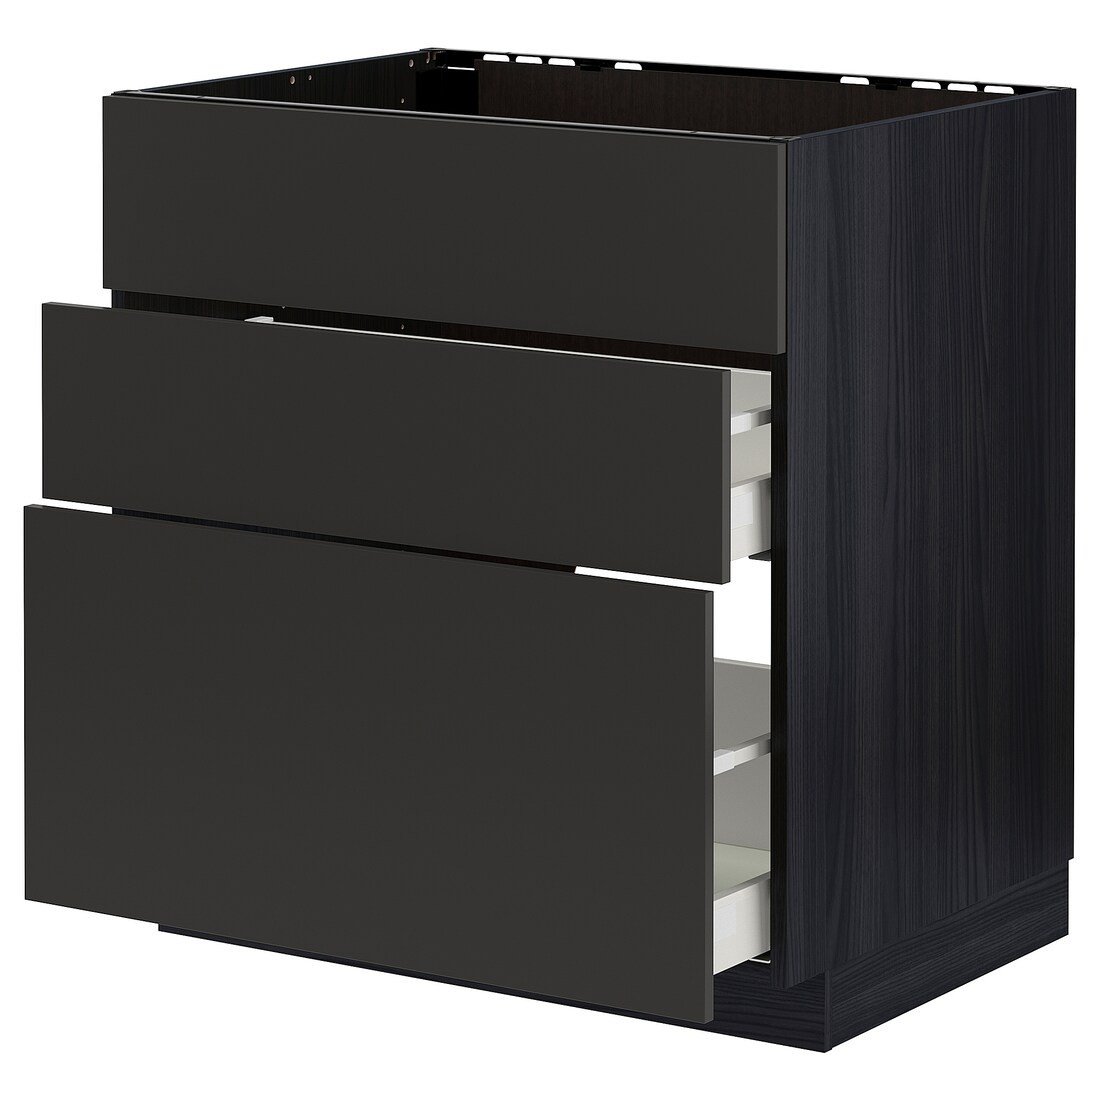 IKEA METOD МЕТОД / MAXIMERA МАКСИМЕРА Напольный шкаф для варочной панели / вытяжка с ящиком, черный / Nickebo матовый антрацит, 80x60 см 39497626 394.976.26